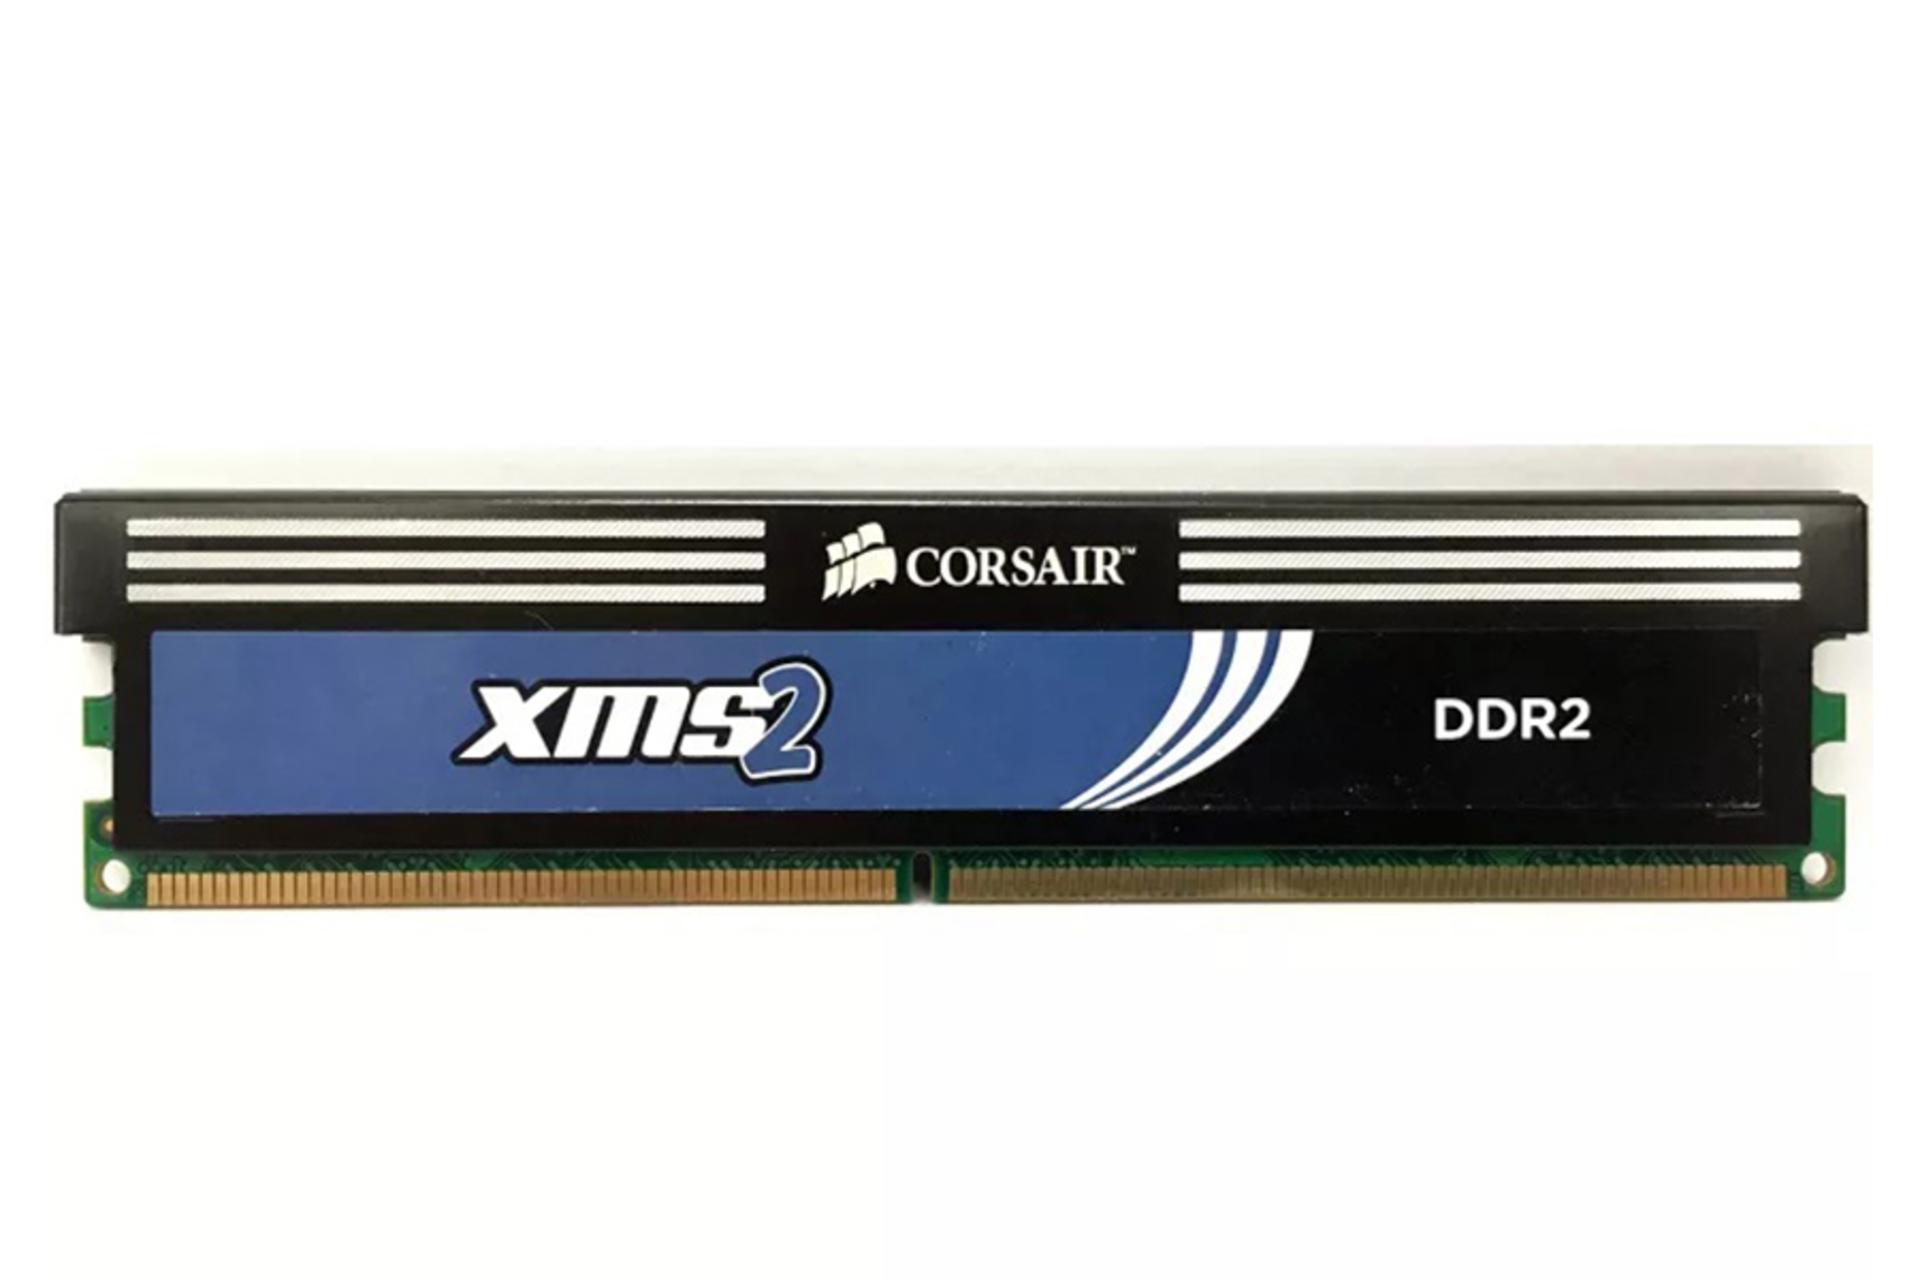 نمای جلوی رم کورسیر XMS2 ظرفیت 2 گیگابایت از نوع DDR2-800